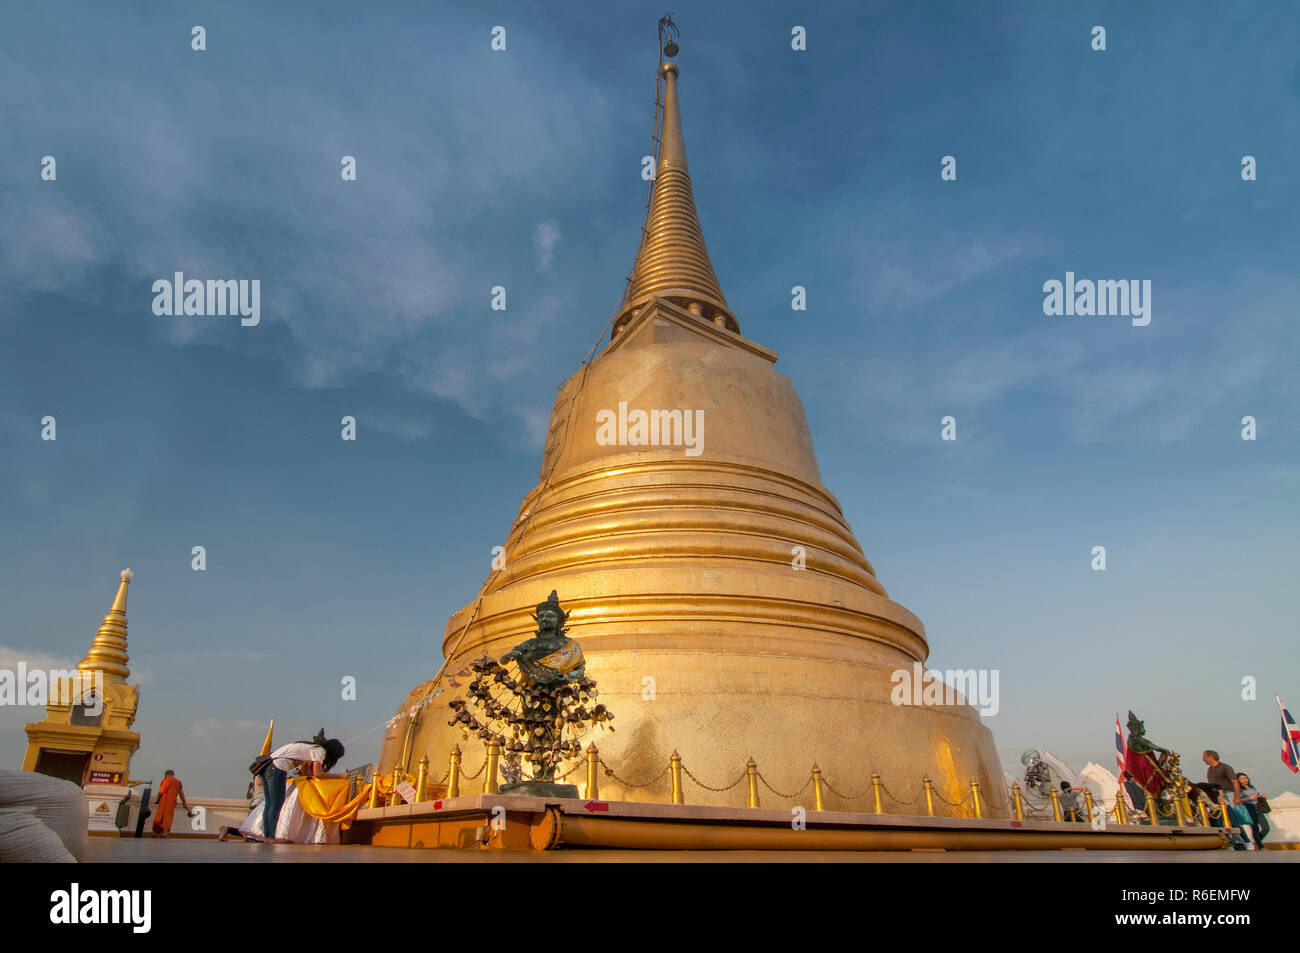 Le dôme de la Mount Temple d'Or (Wat Saket) à Bangkok, Thaïlande Banque D'Images